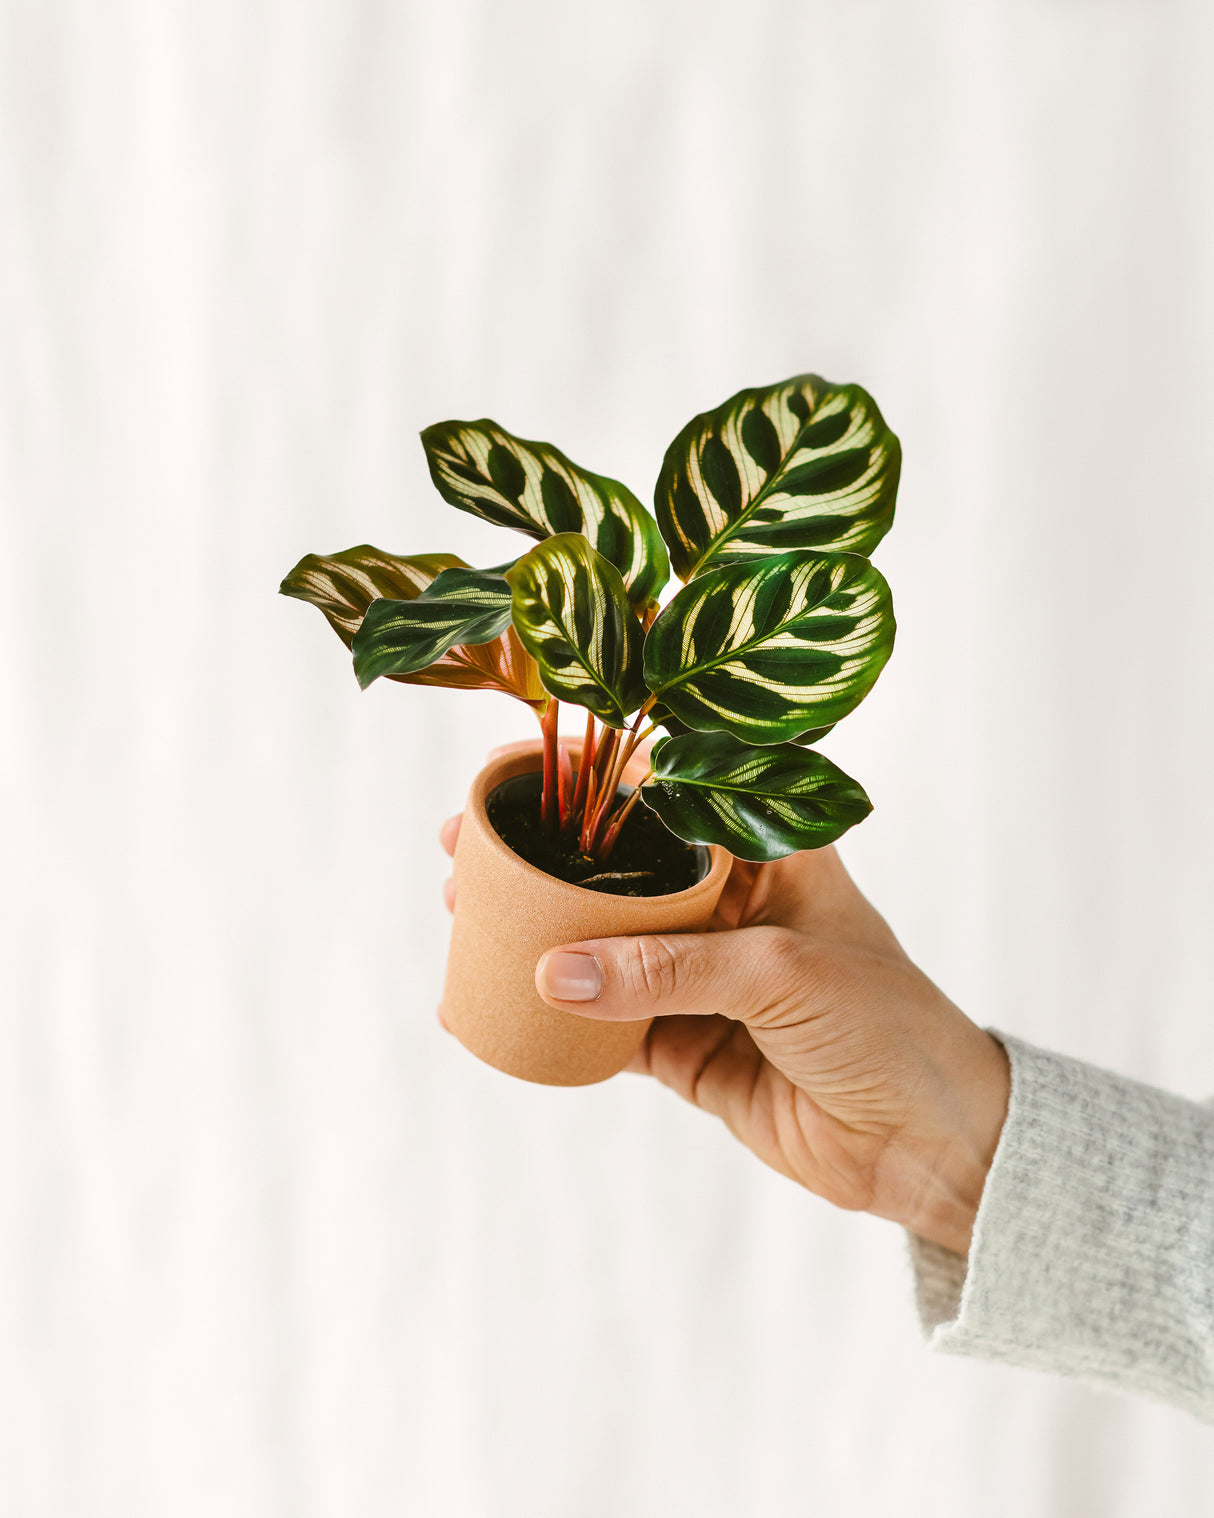 Mini plantes d'intérieur à adopter et faire grandir – La Green Touch